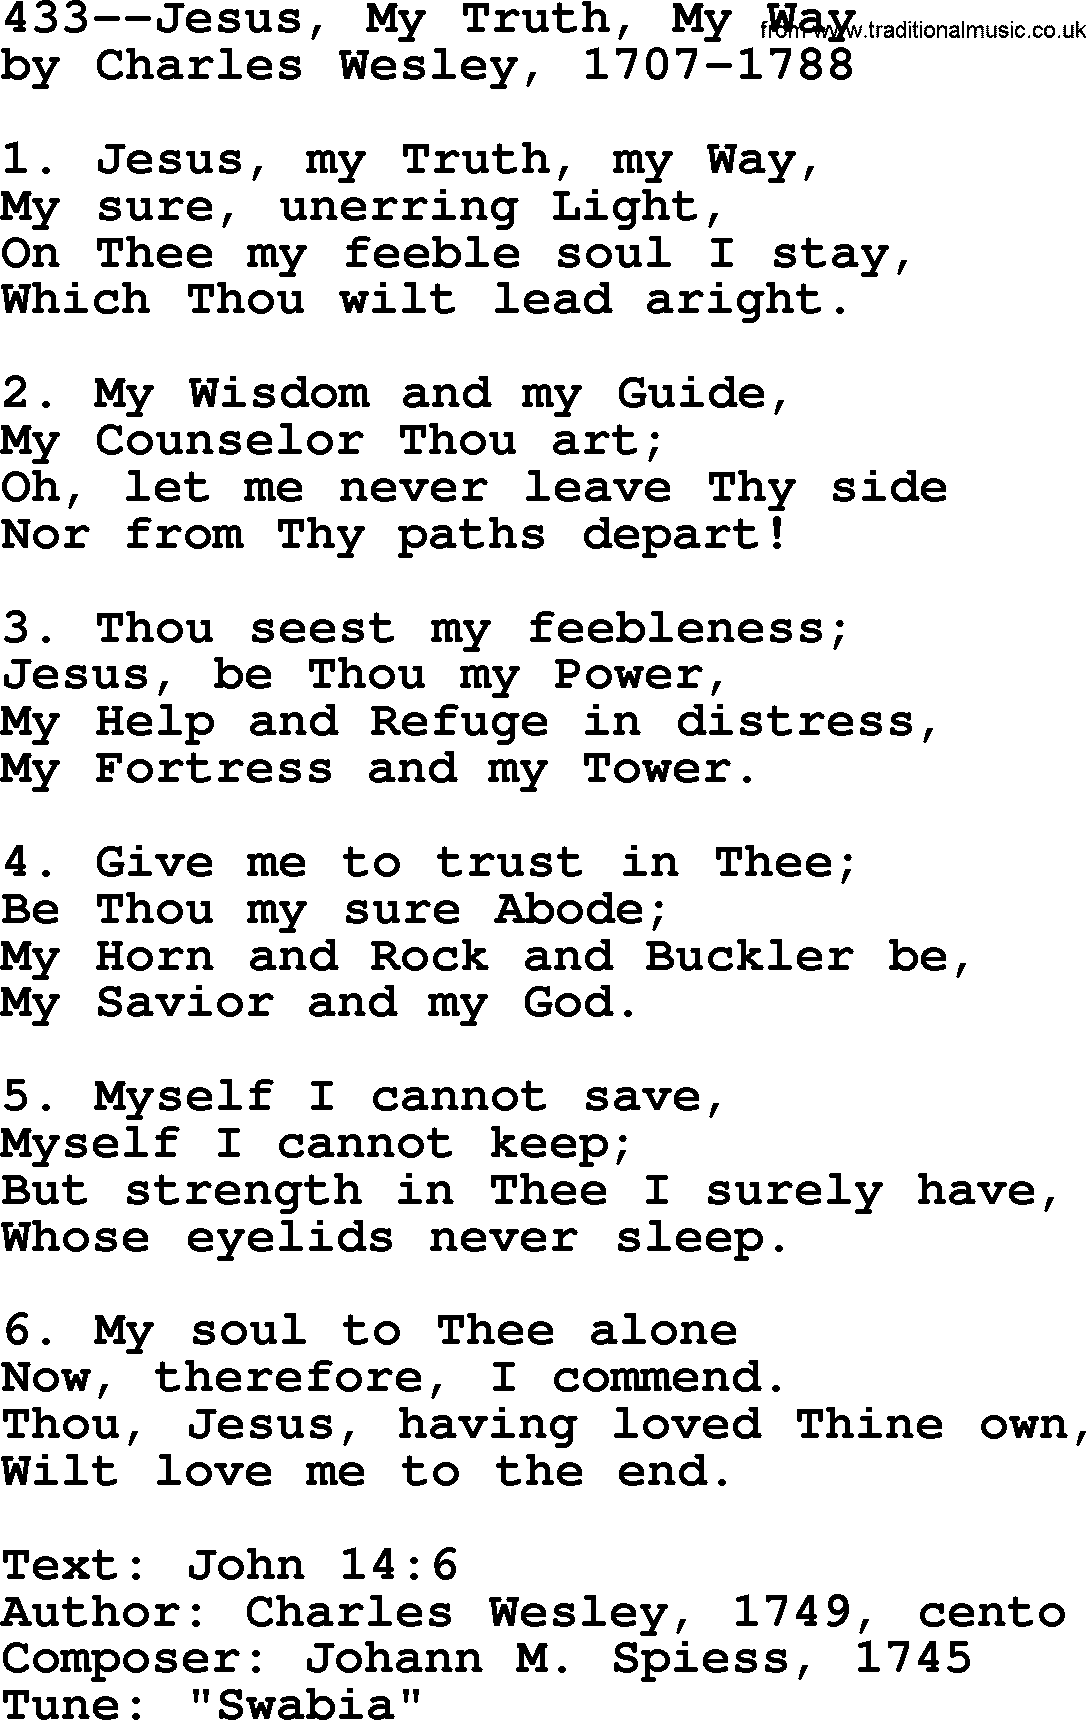 Lutheran Hymn: 433--Jesus, My Truth, My Way.txt lyrics with PDF